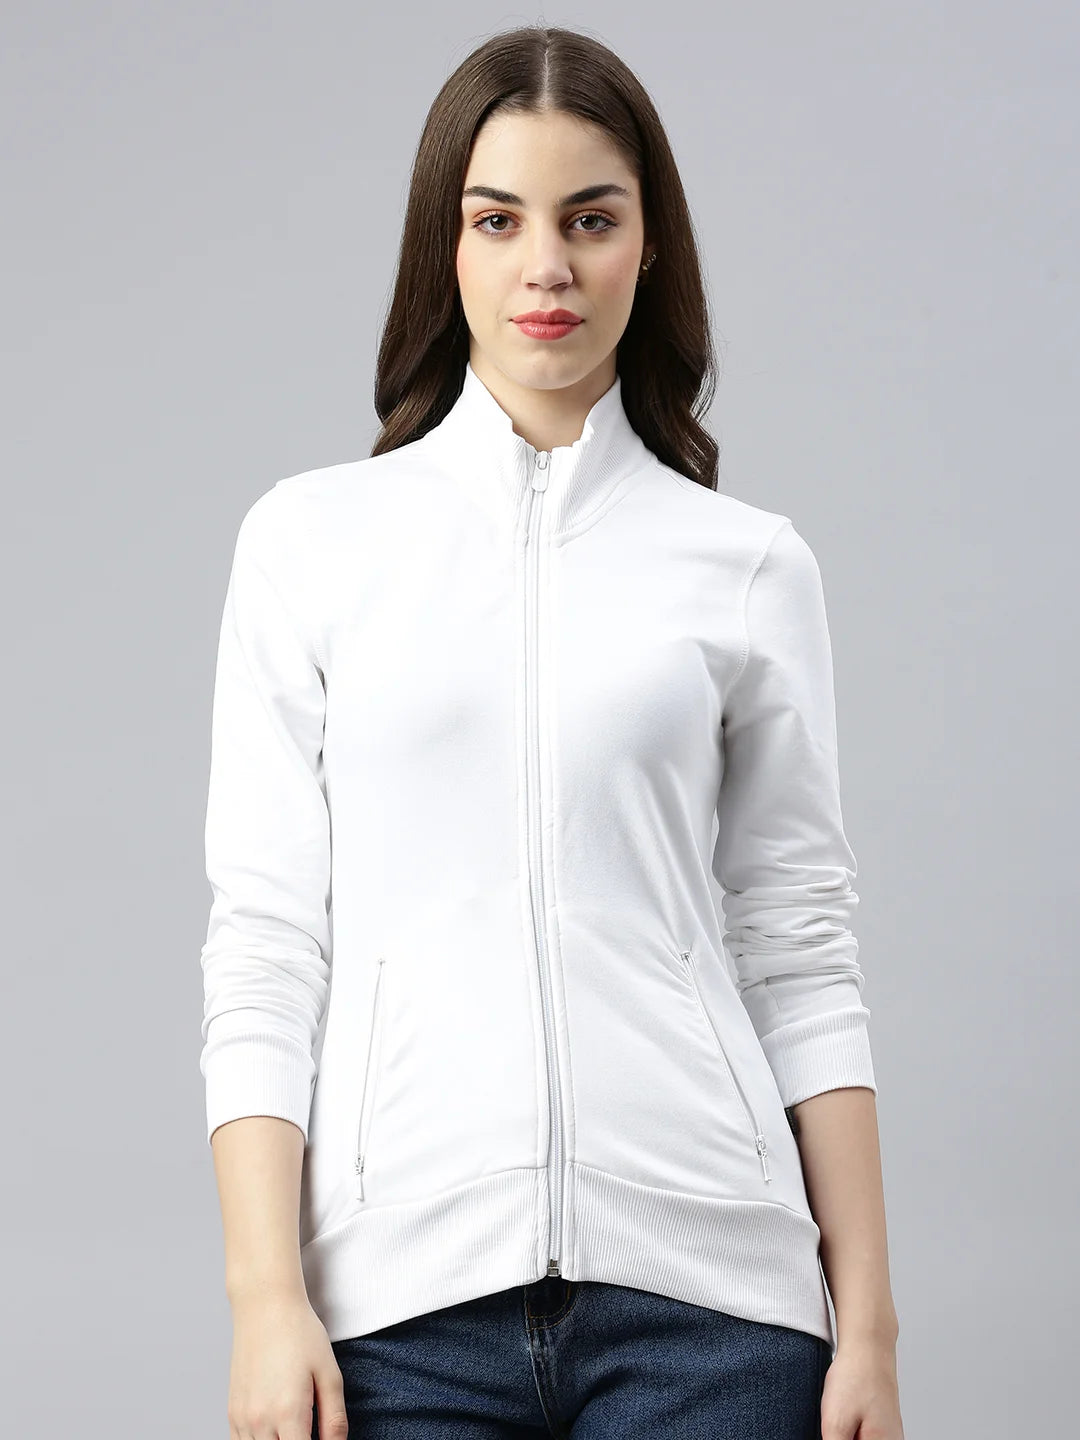 donna-mia-organico-cotone-giacca-bianco-fronte